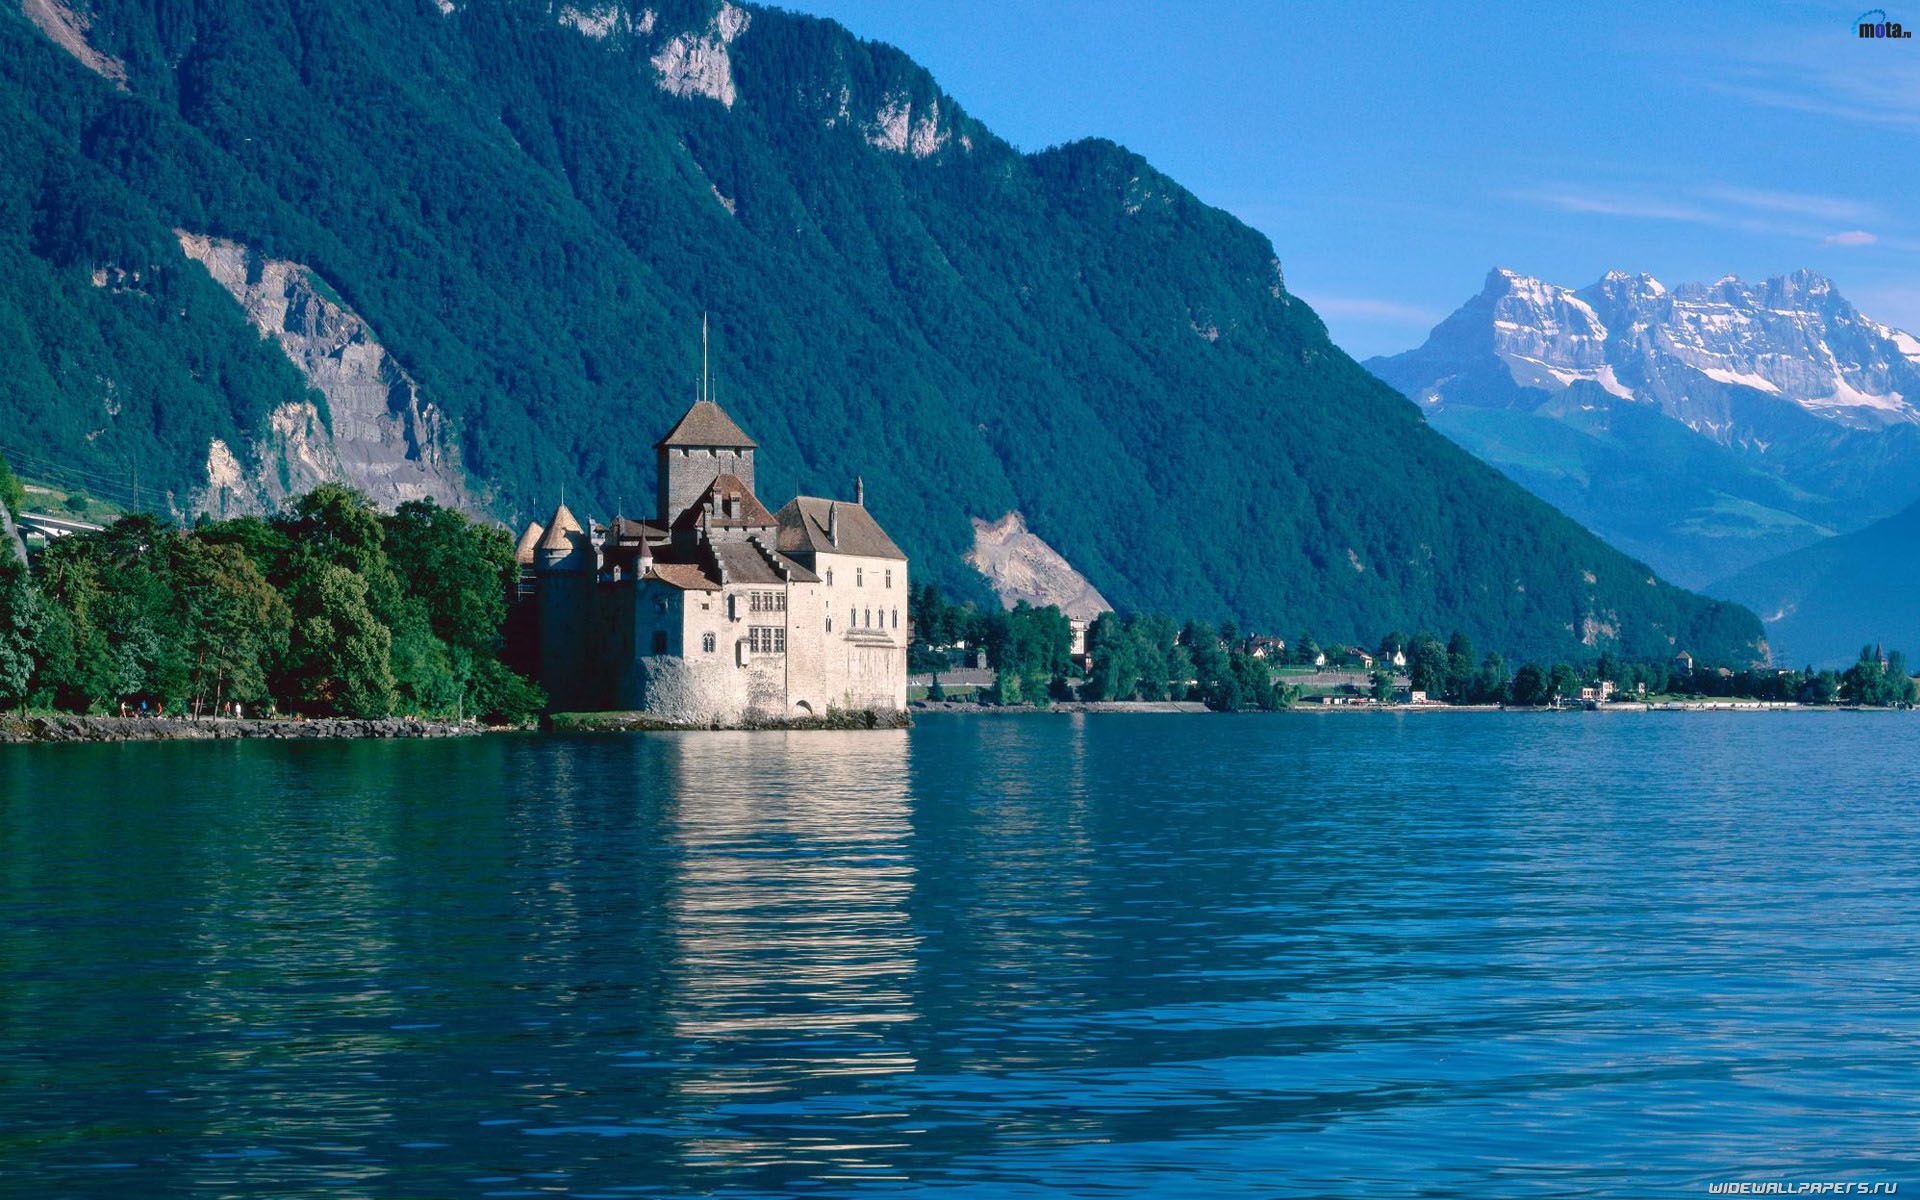 Download Wallpaper lake castle montreux chillon switzerland